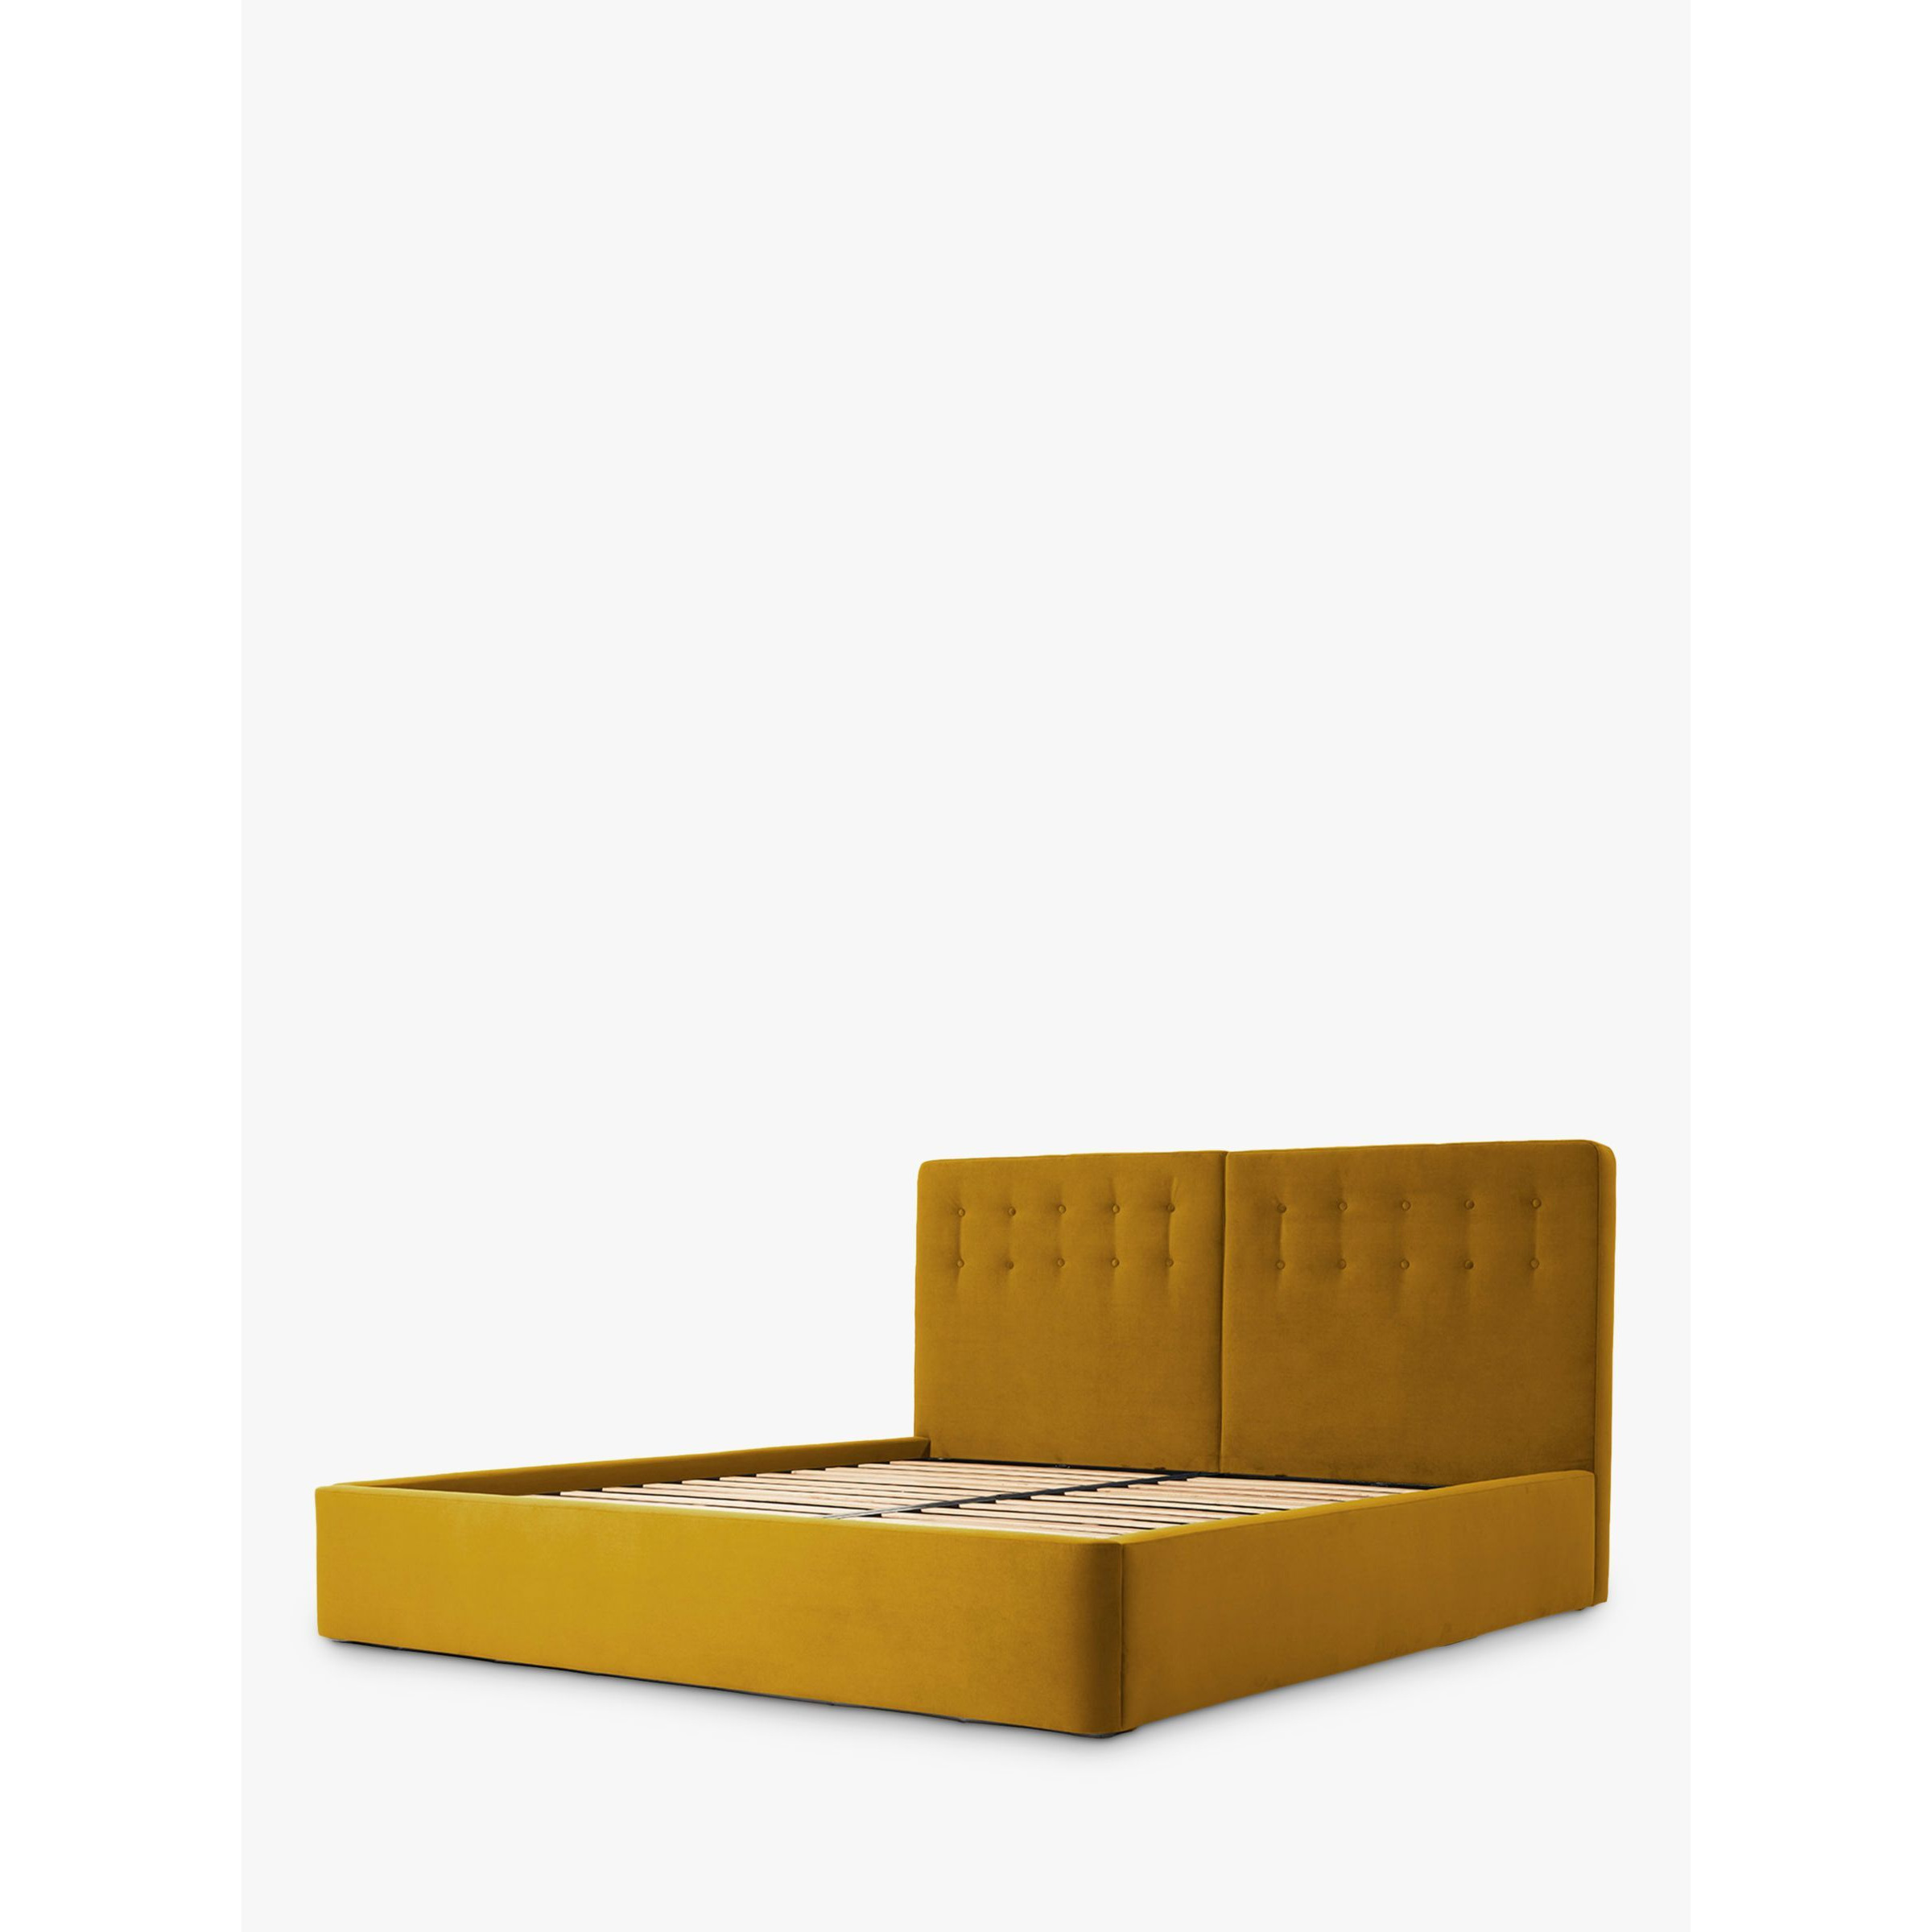 Swyft Bed 01 Upholstered Bed Frame, Super King Size - image 1